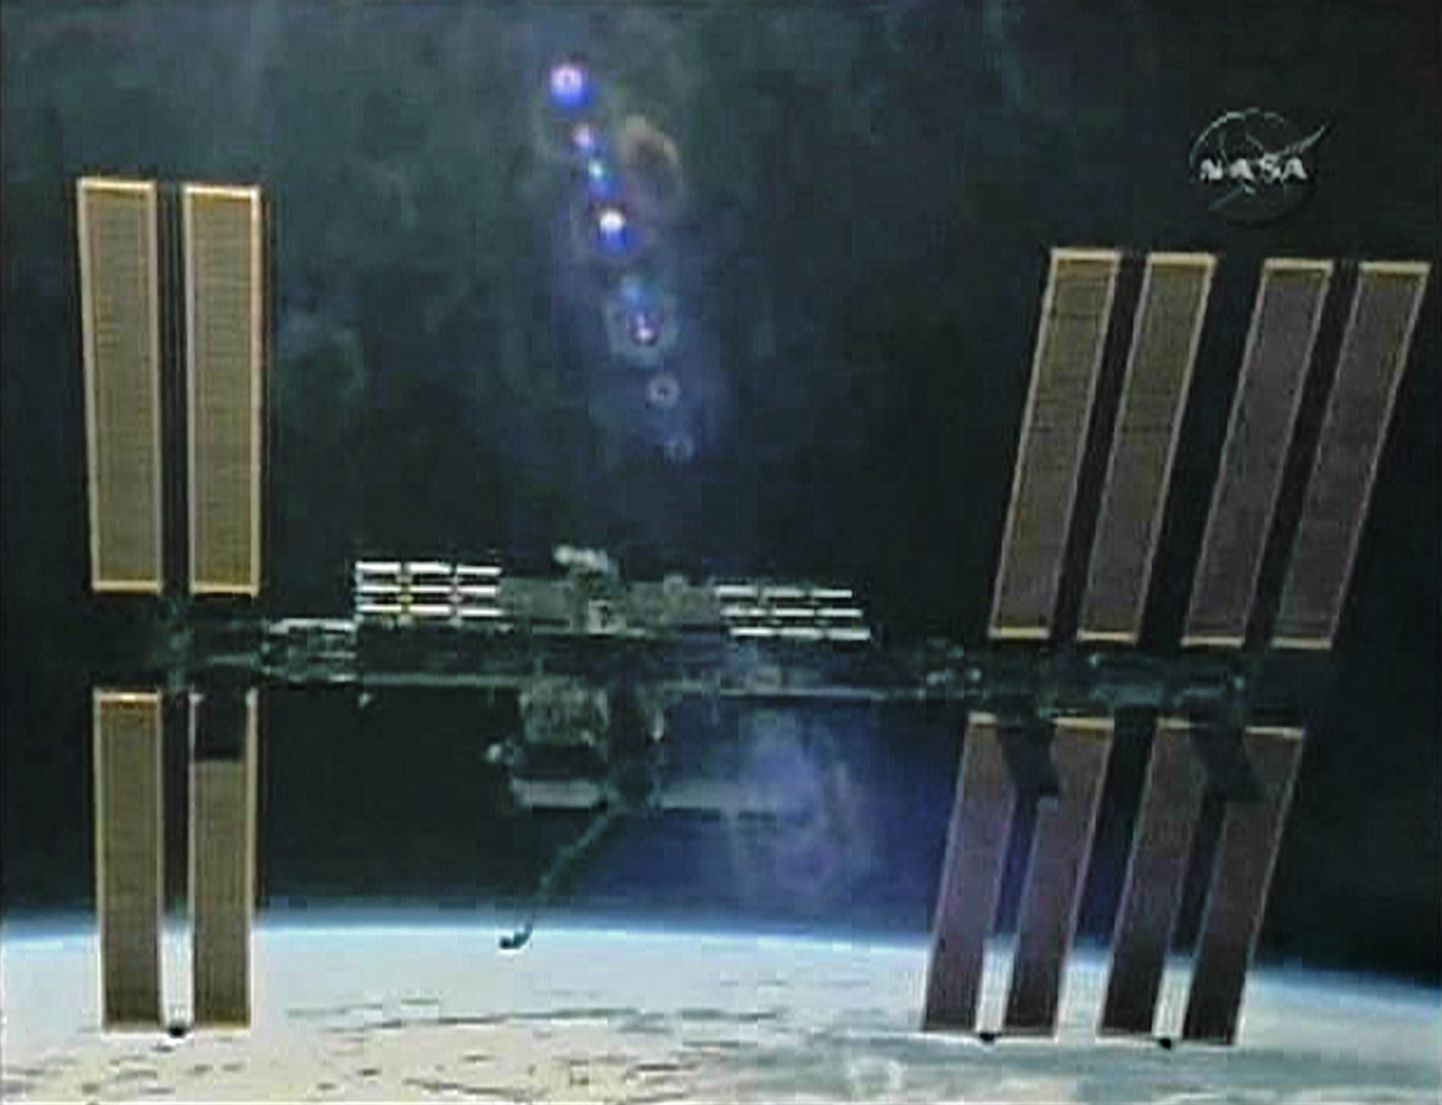 Rahvusvaheline kosmosejaam (ISS).